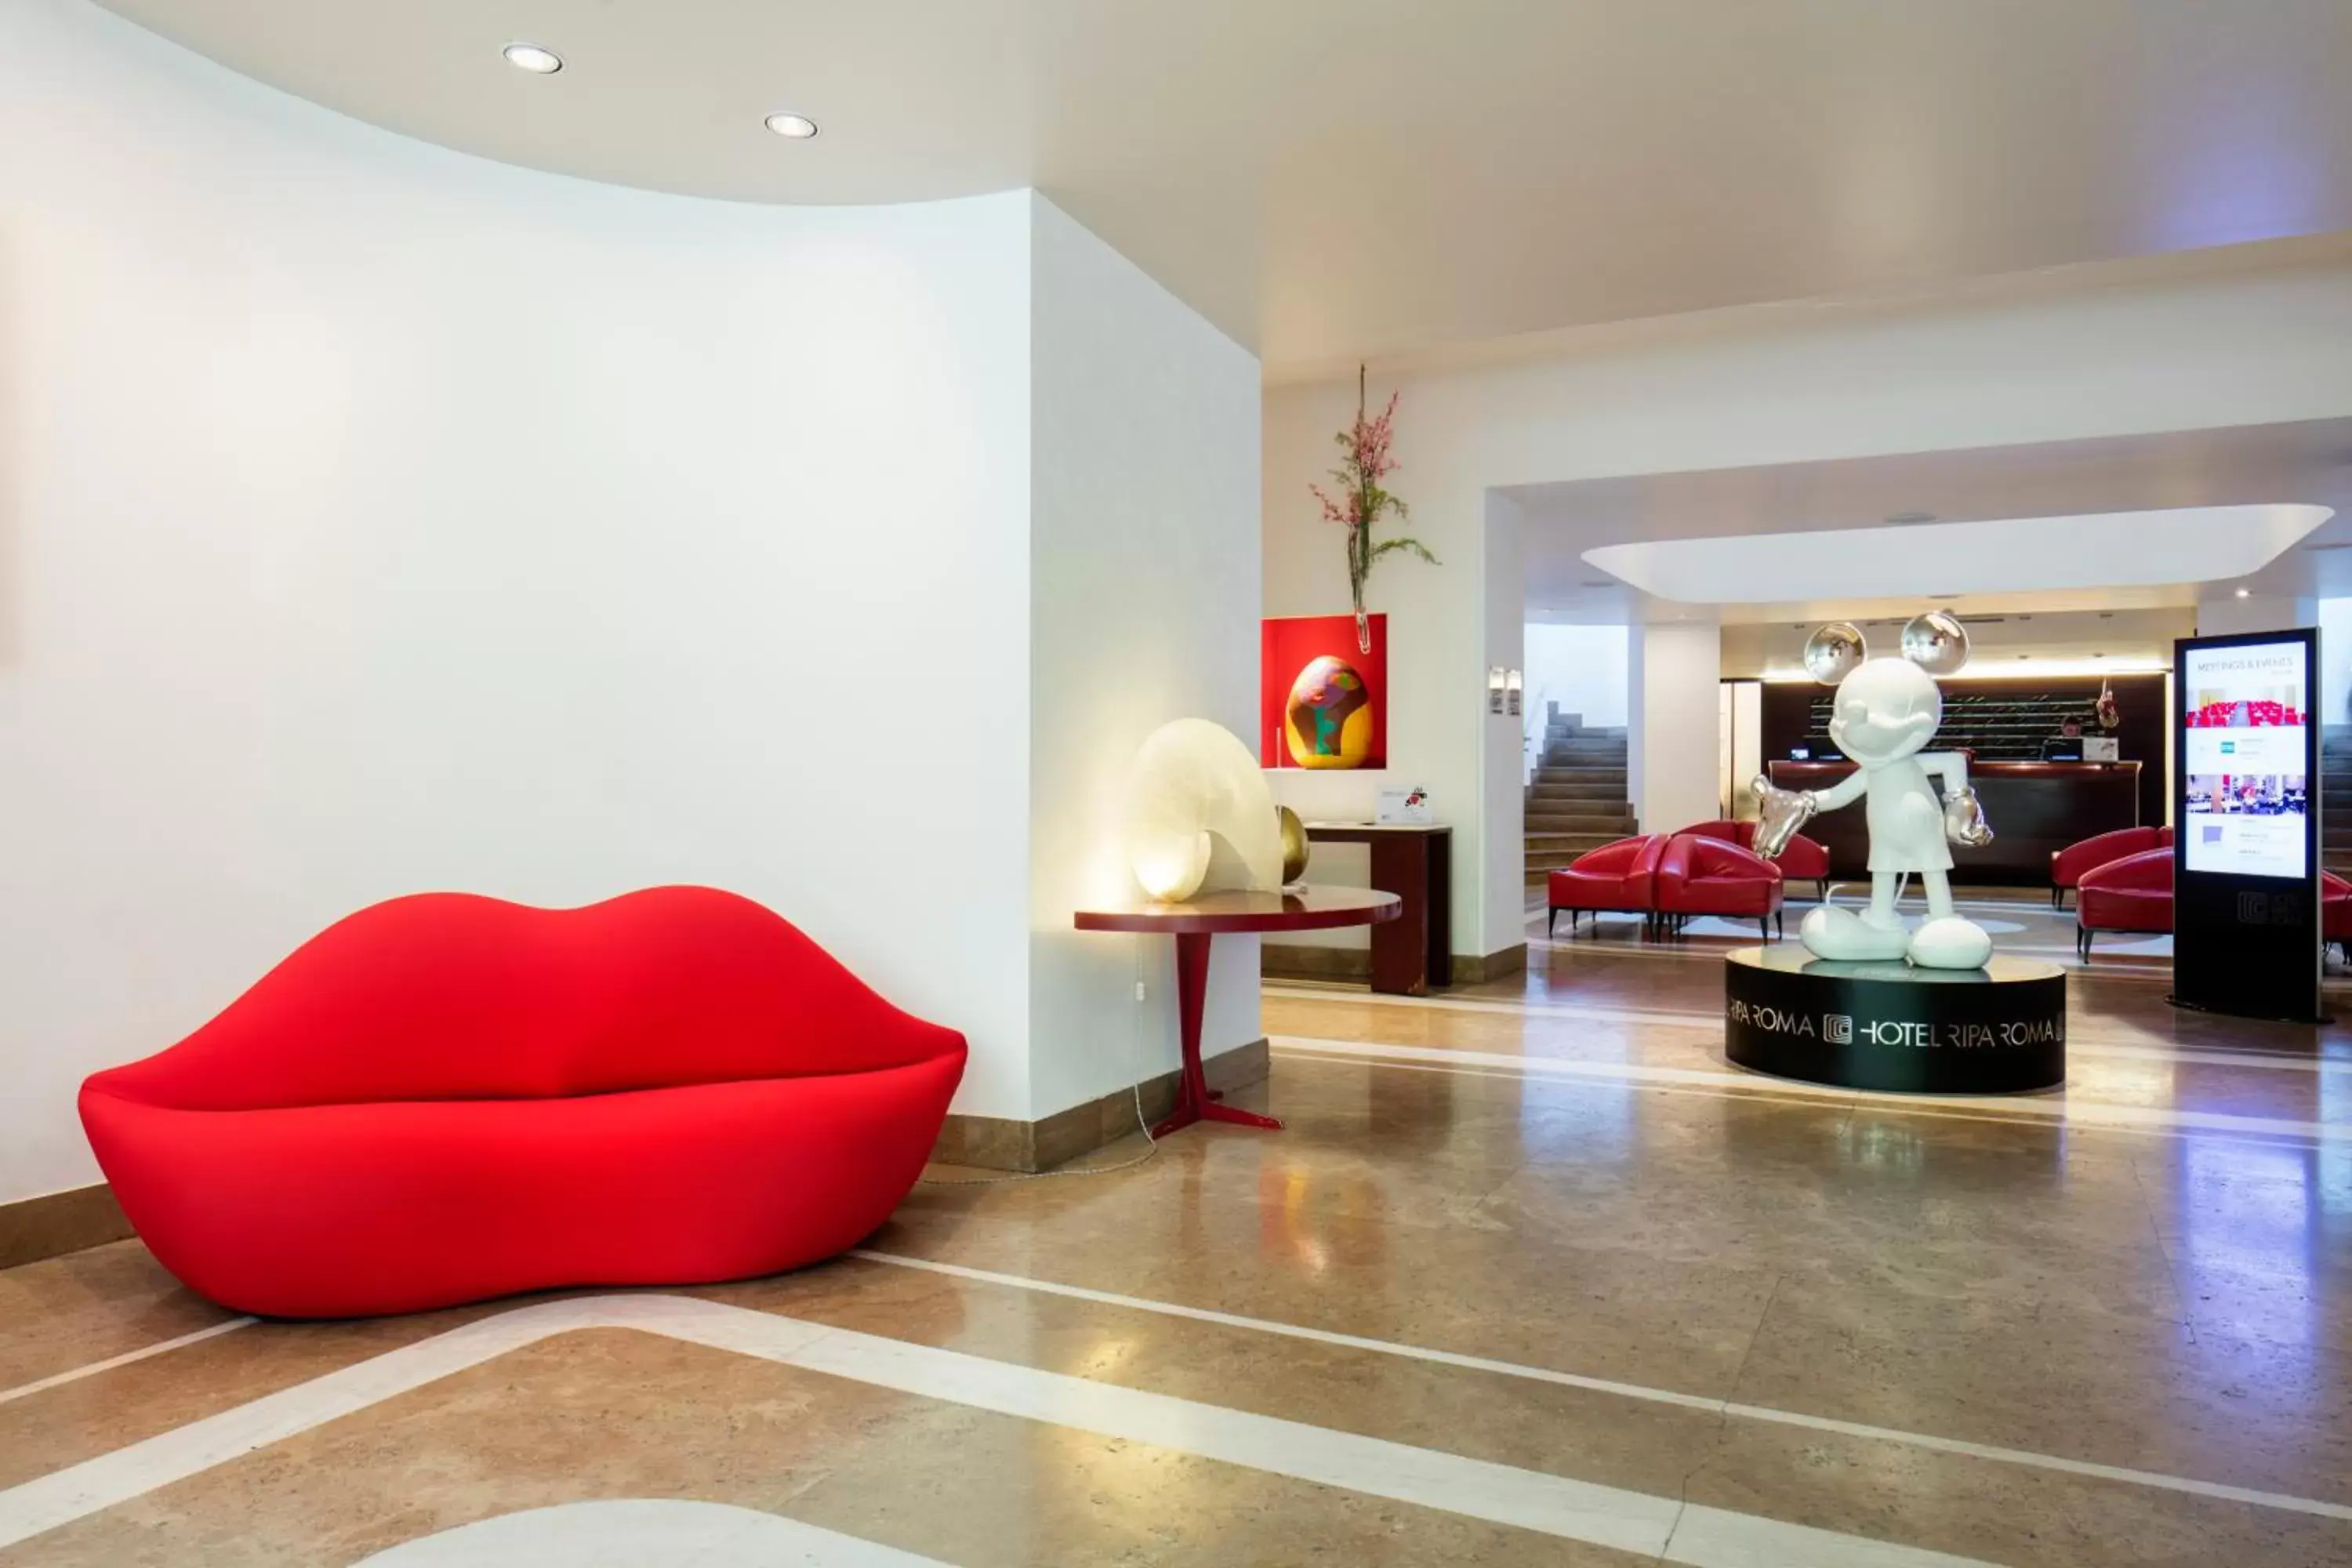 Lobby or reception in Hotel Ripa Roma